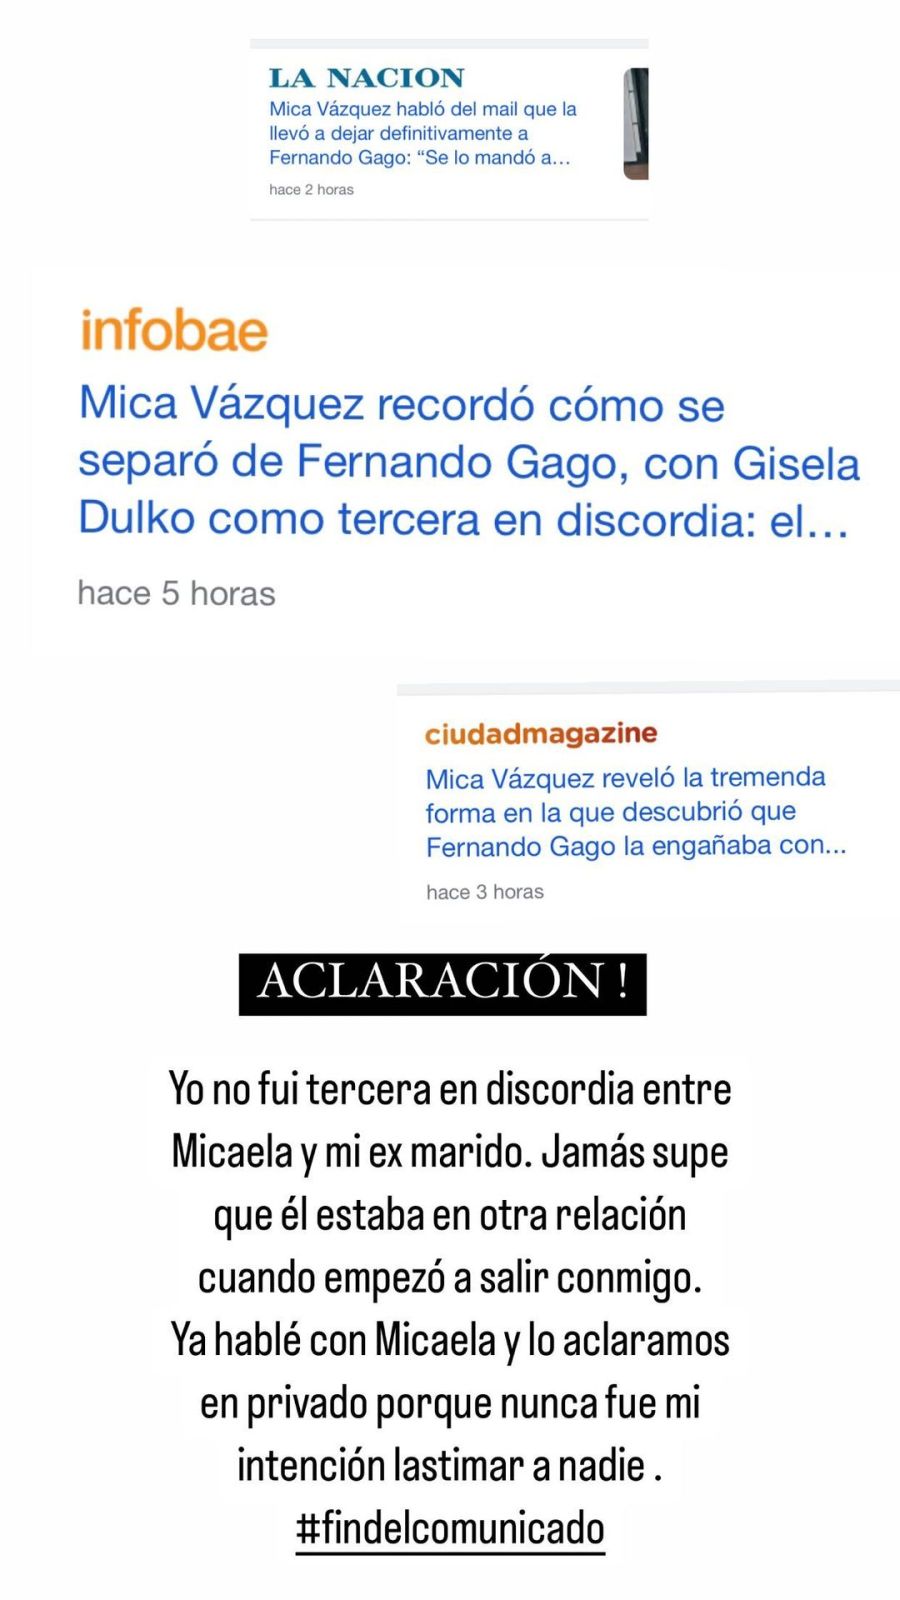 Gisela Dulko hizo su descargo tras ser señalada como la tercera en discordia entre Fernando Gago y Mica Vázquez